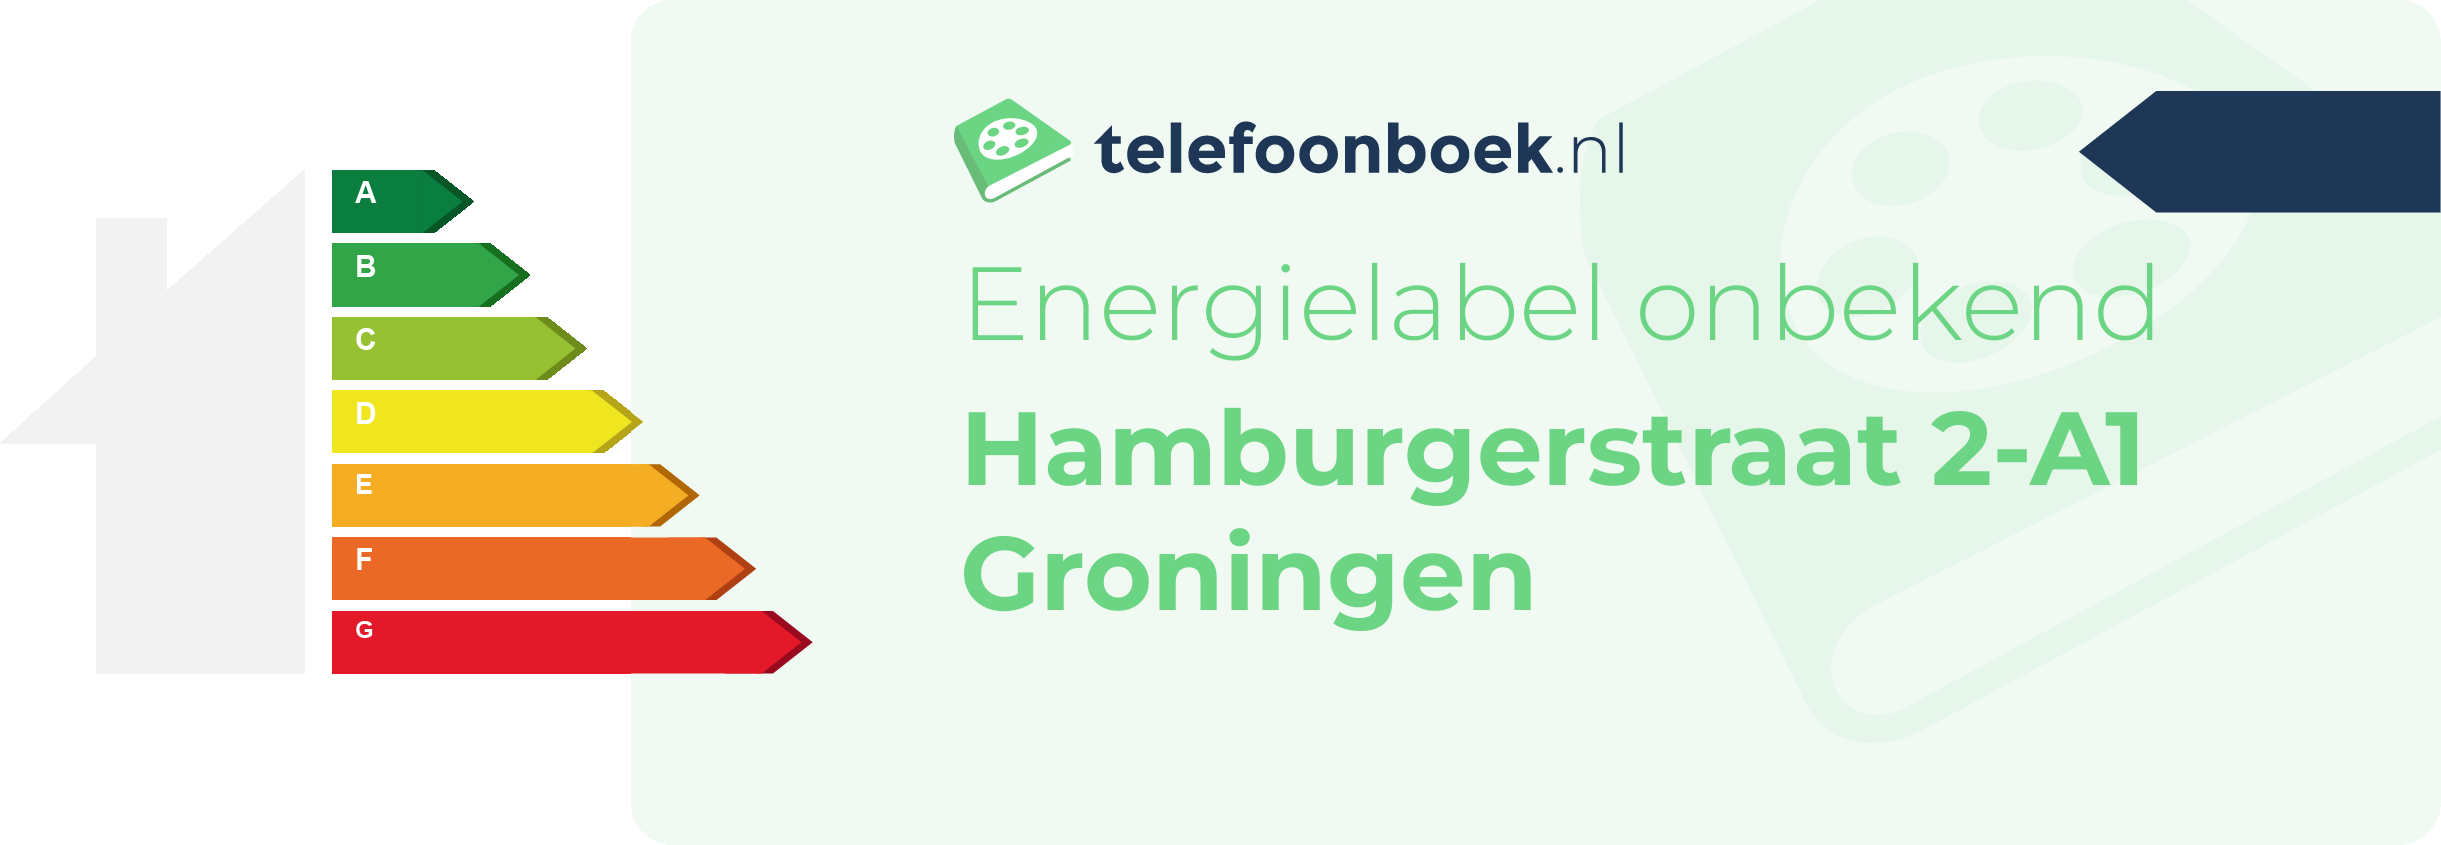 Energielabel Hamburgerstraat 2-A1 Groningen